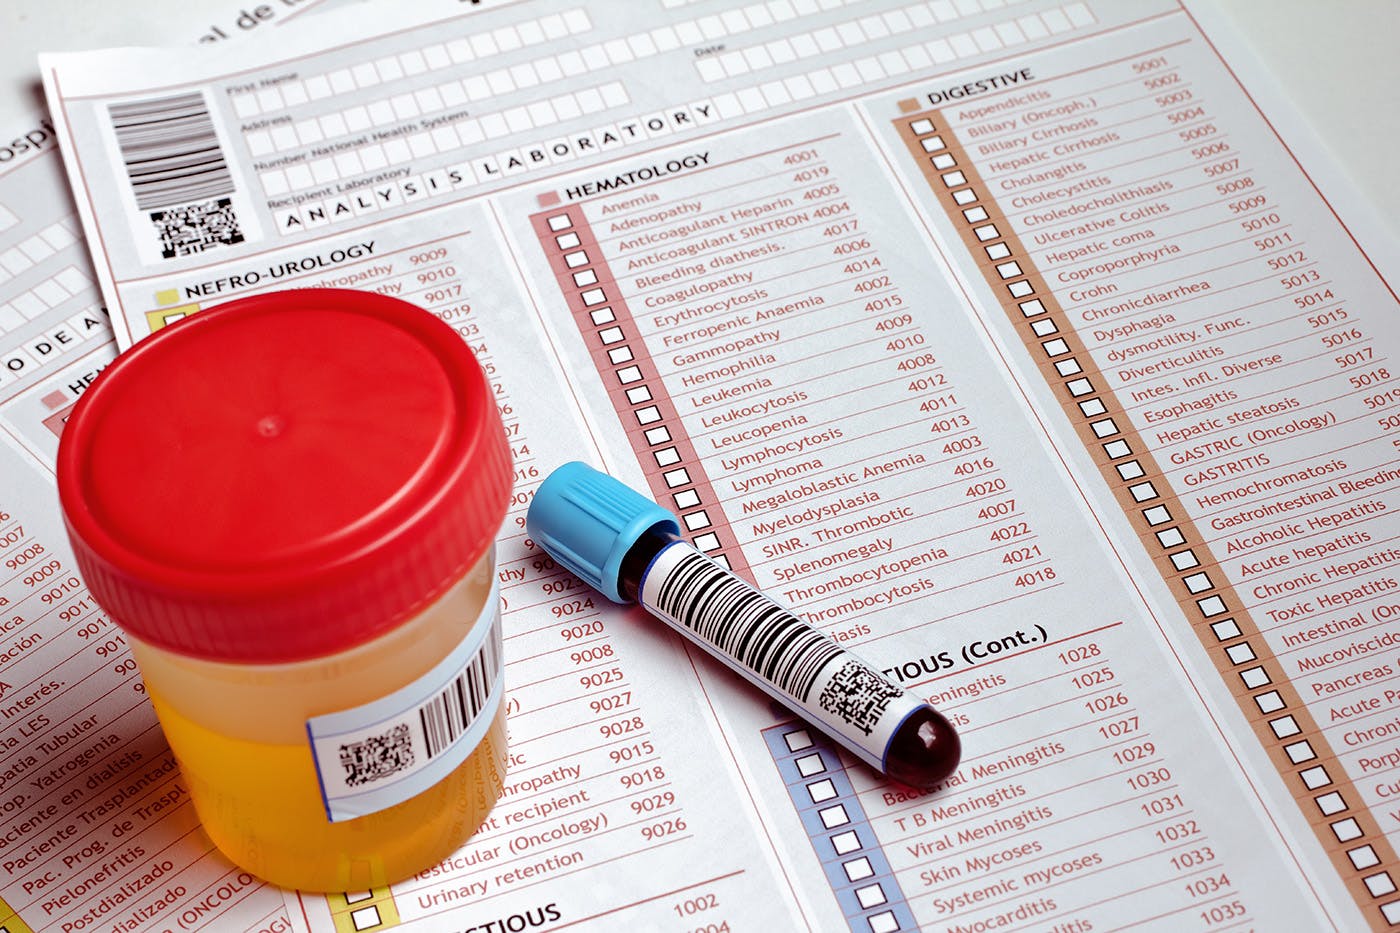 HHC drug test checklist paper